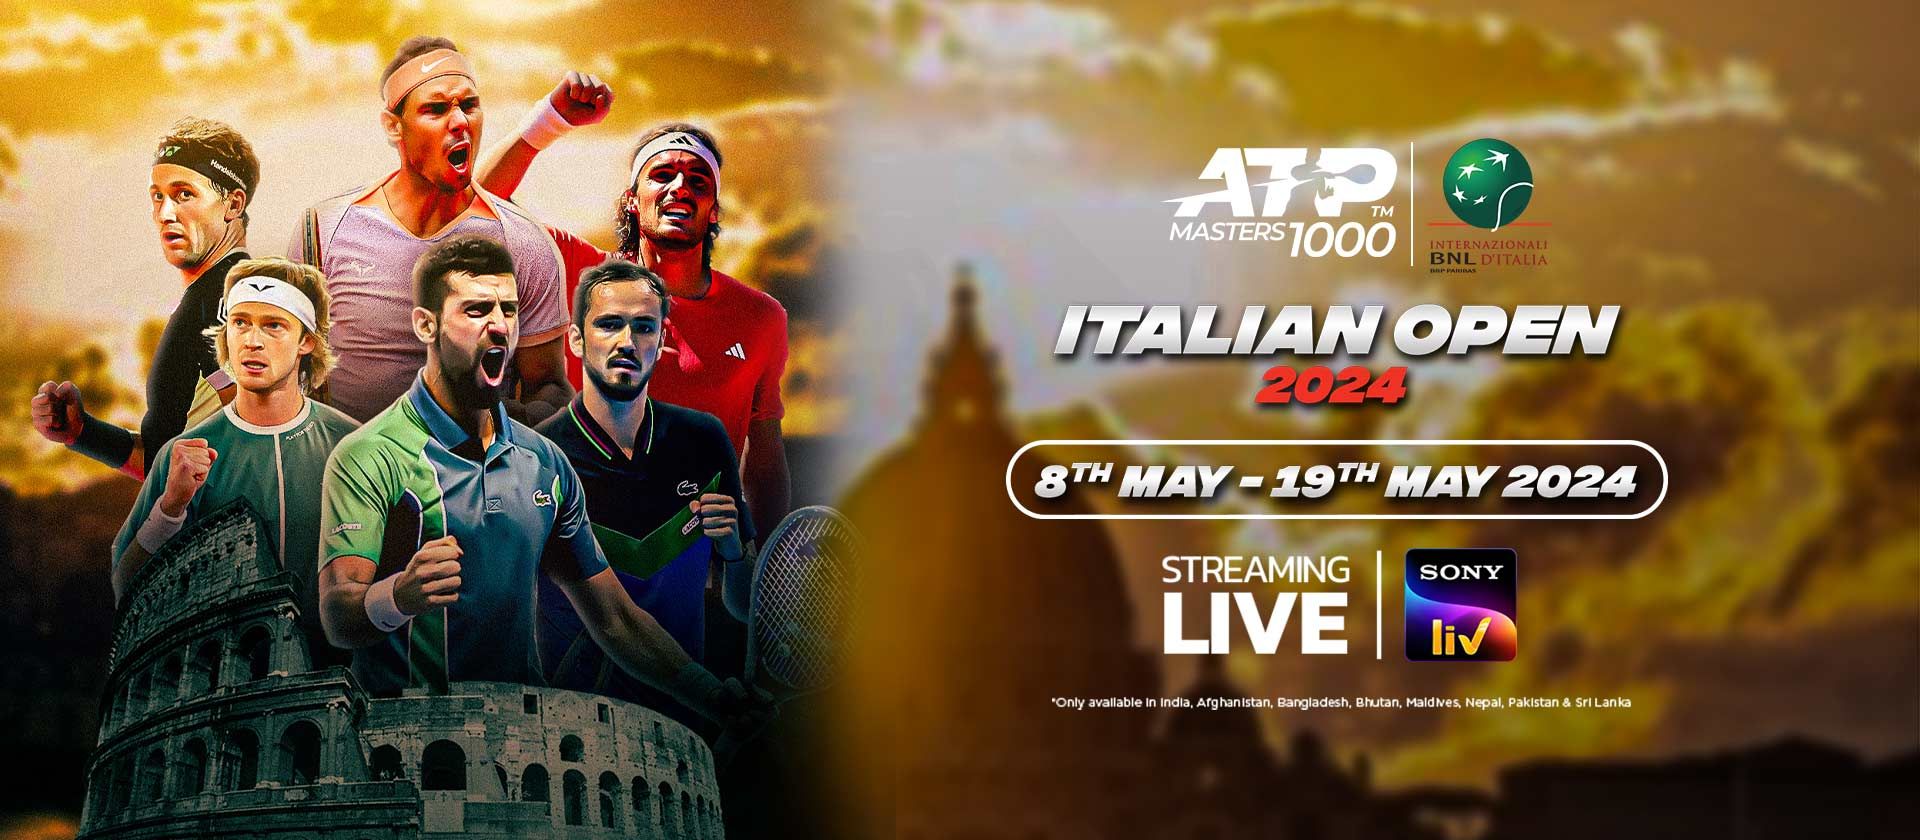 ATP Italian open